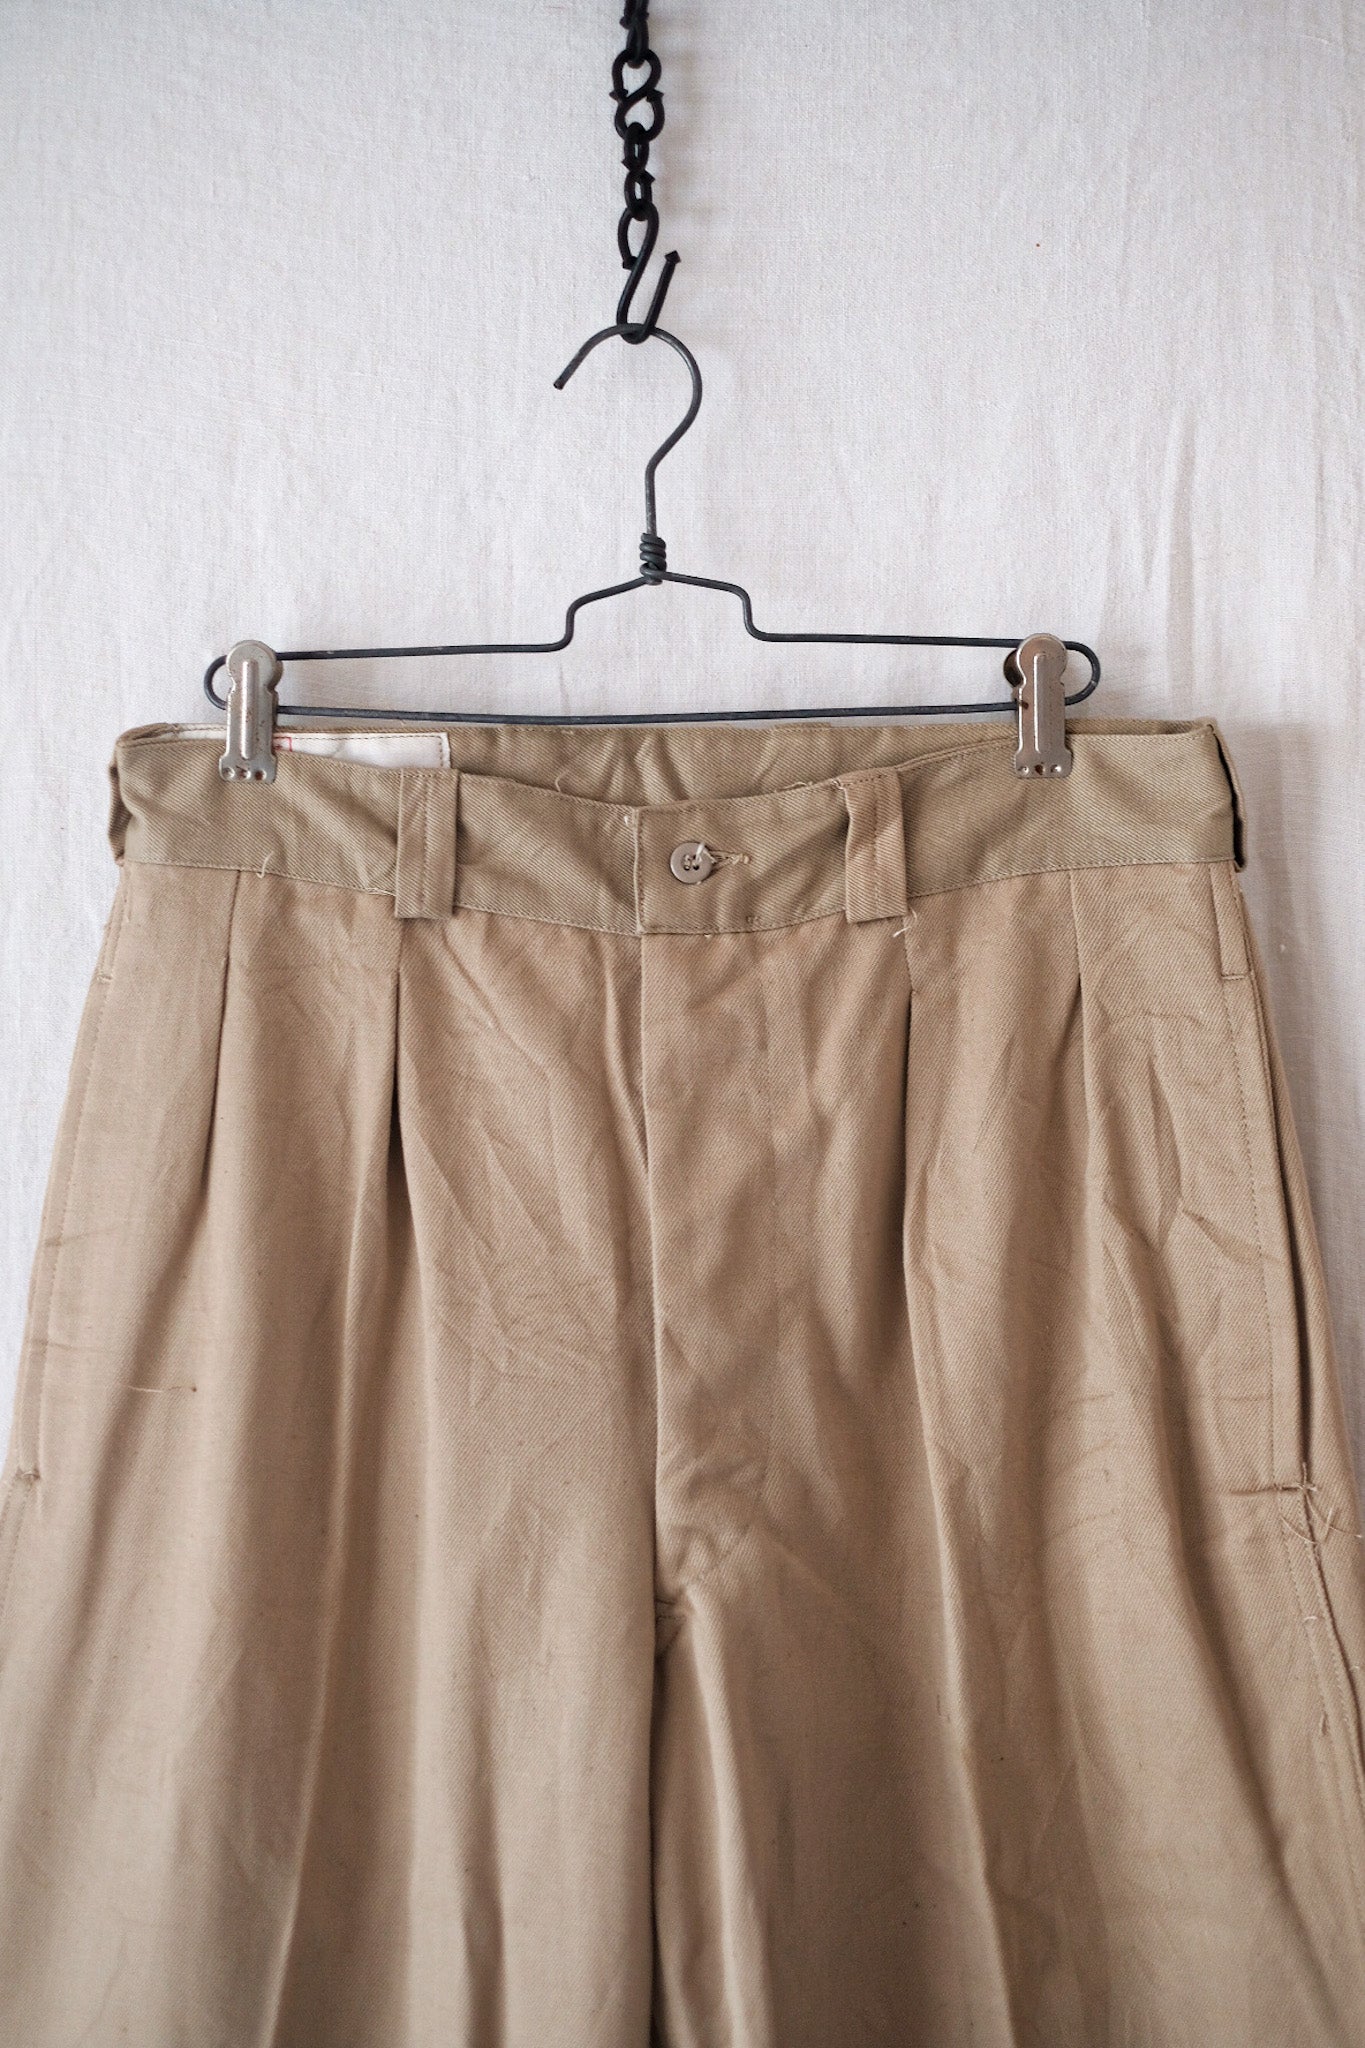 [〜60年代]法國軍隊M52 Chino褲子的大小。21“死股”